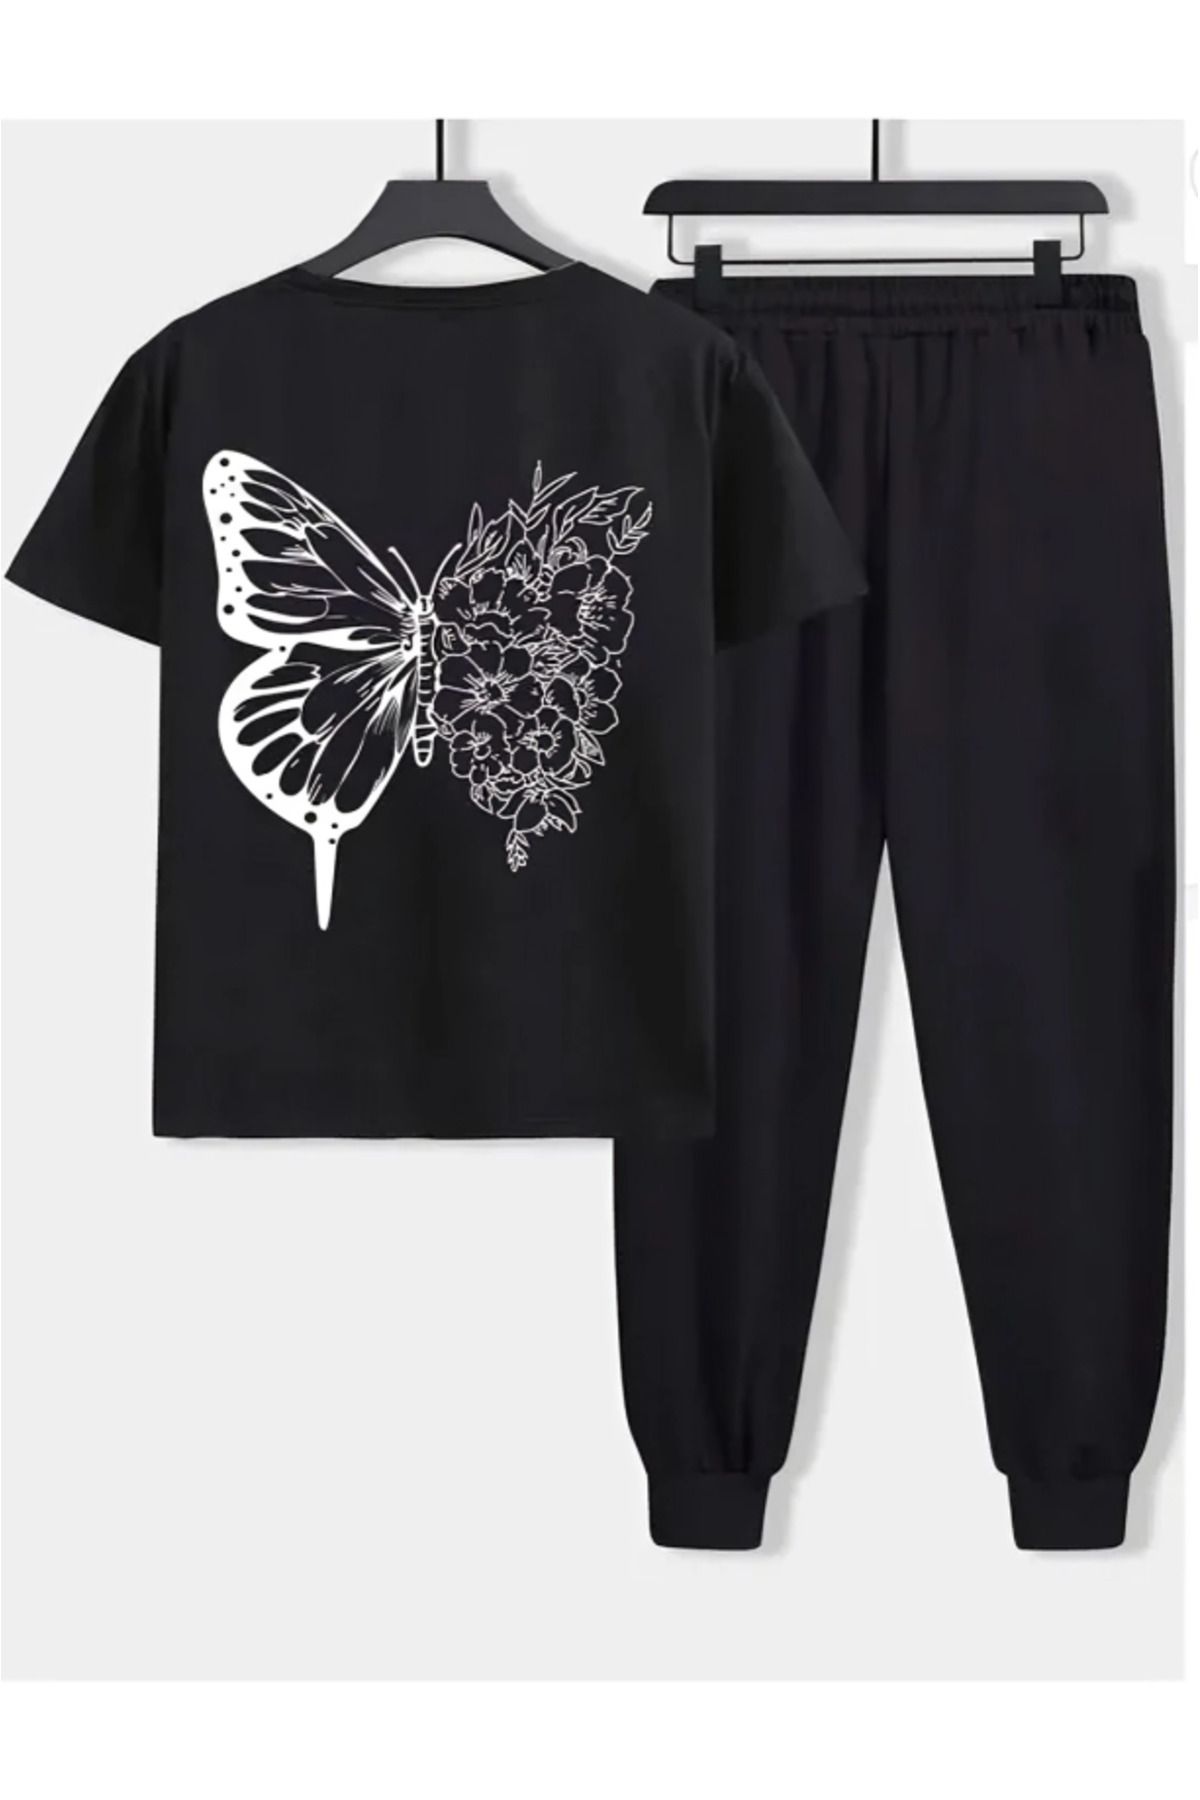 Modern Moda Butterfly Eşofman Altı T-shirt - Siyah Jogger Tişört Alt Üst Eşofman Takımı Oversize Bisiklet Yaka